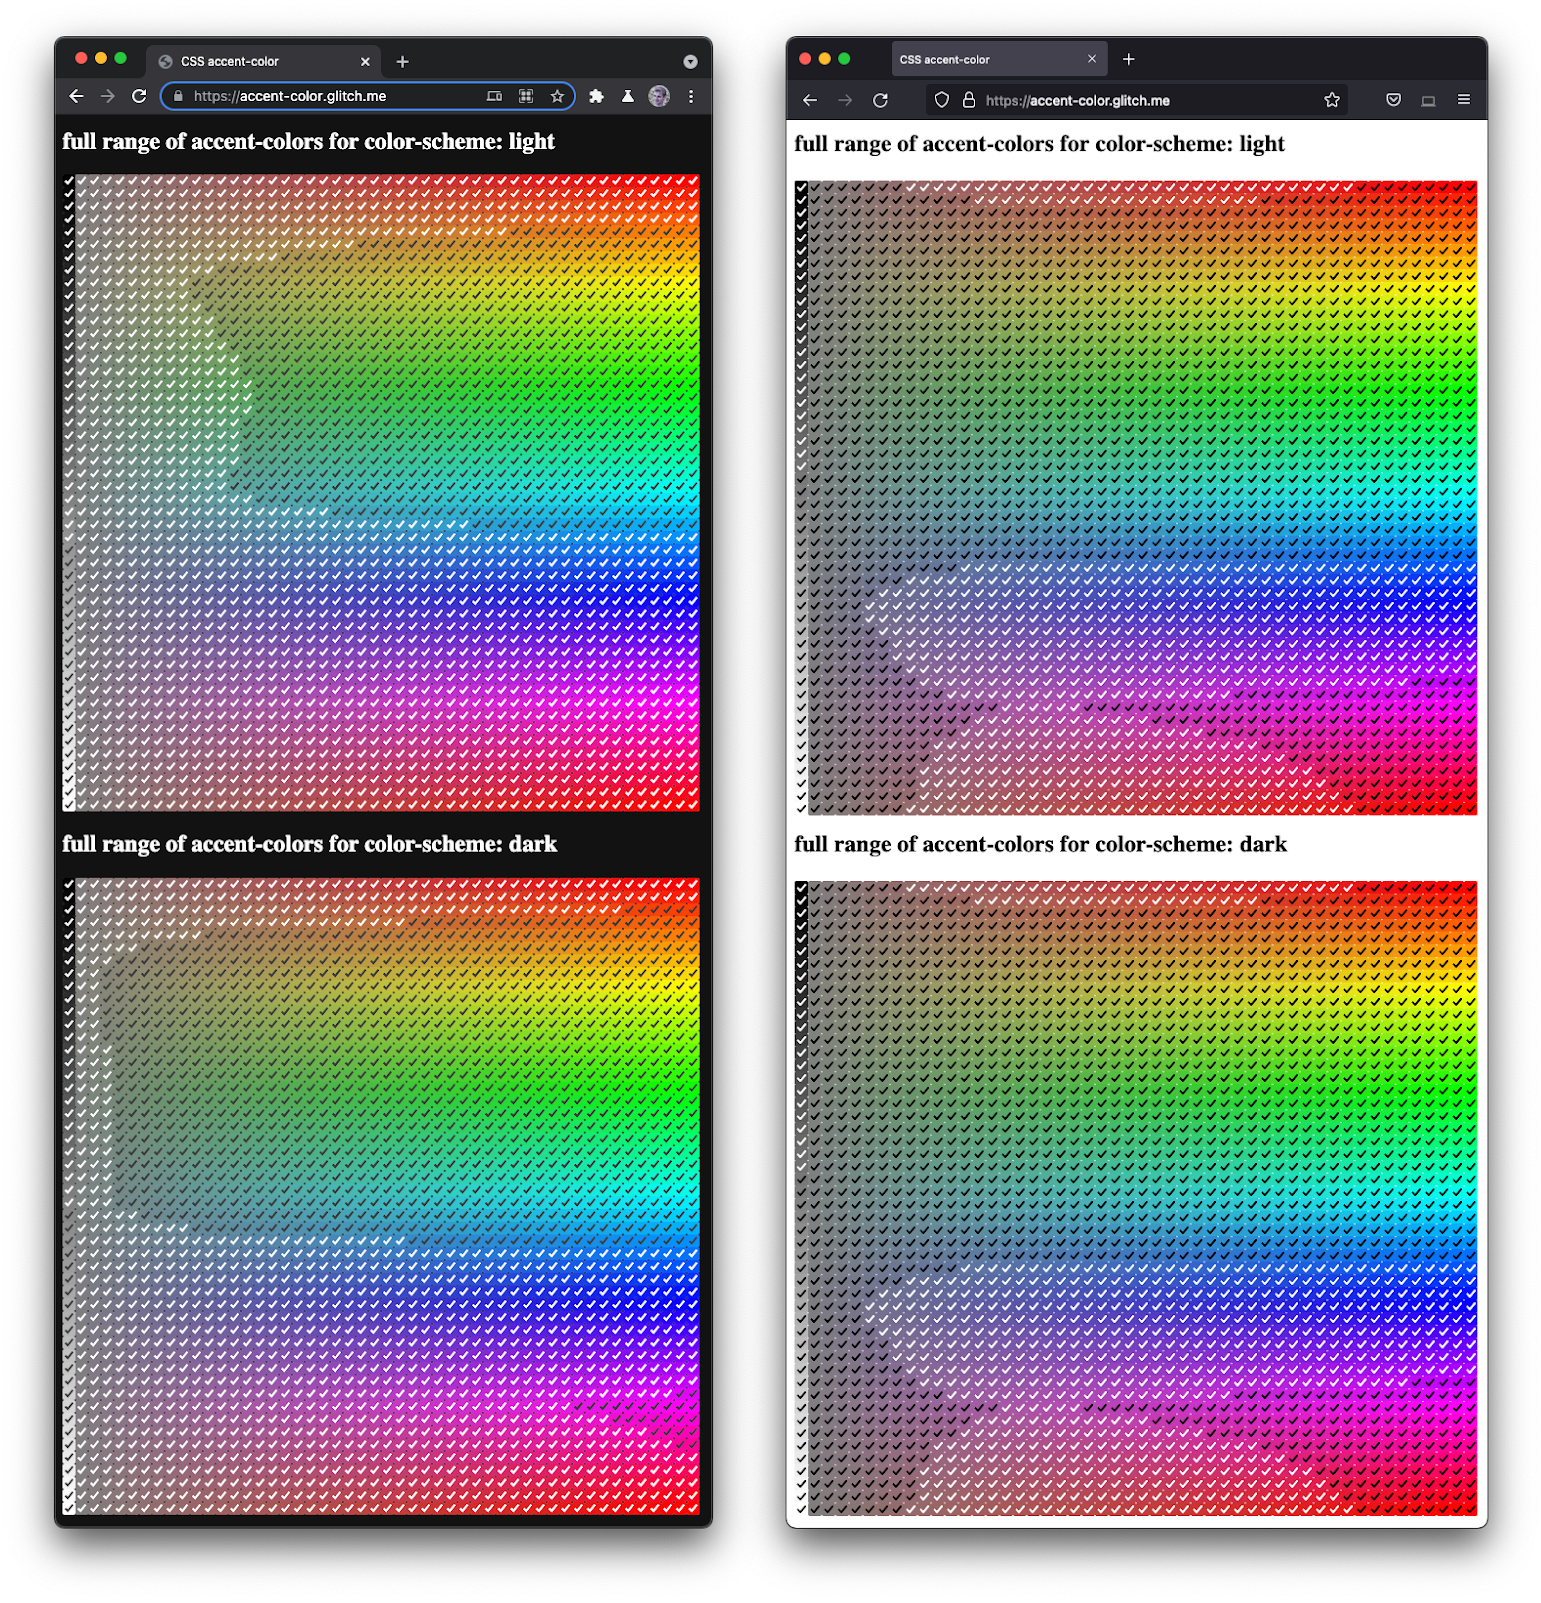 并排显示 Firefox 和 Chromium 的屏幕截图，
  以各种色调和暗度呈现各种复选框。